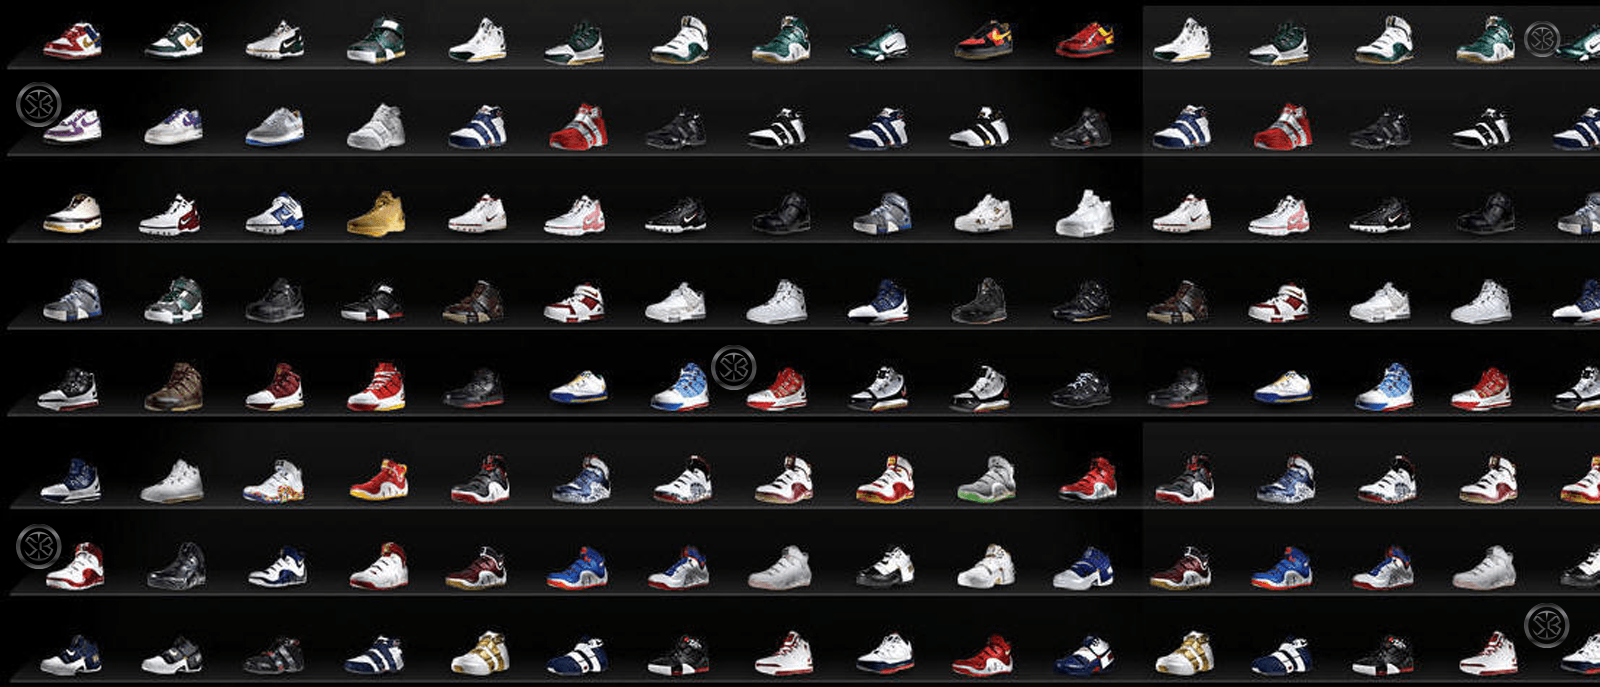 Nba Shoes Wallpaper HD Image For Pc Jordan. Heavenwalls.com™